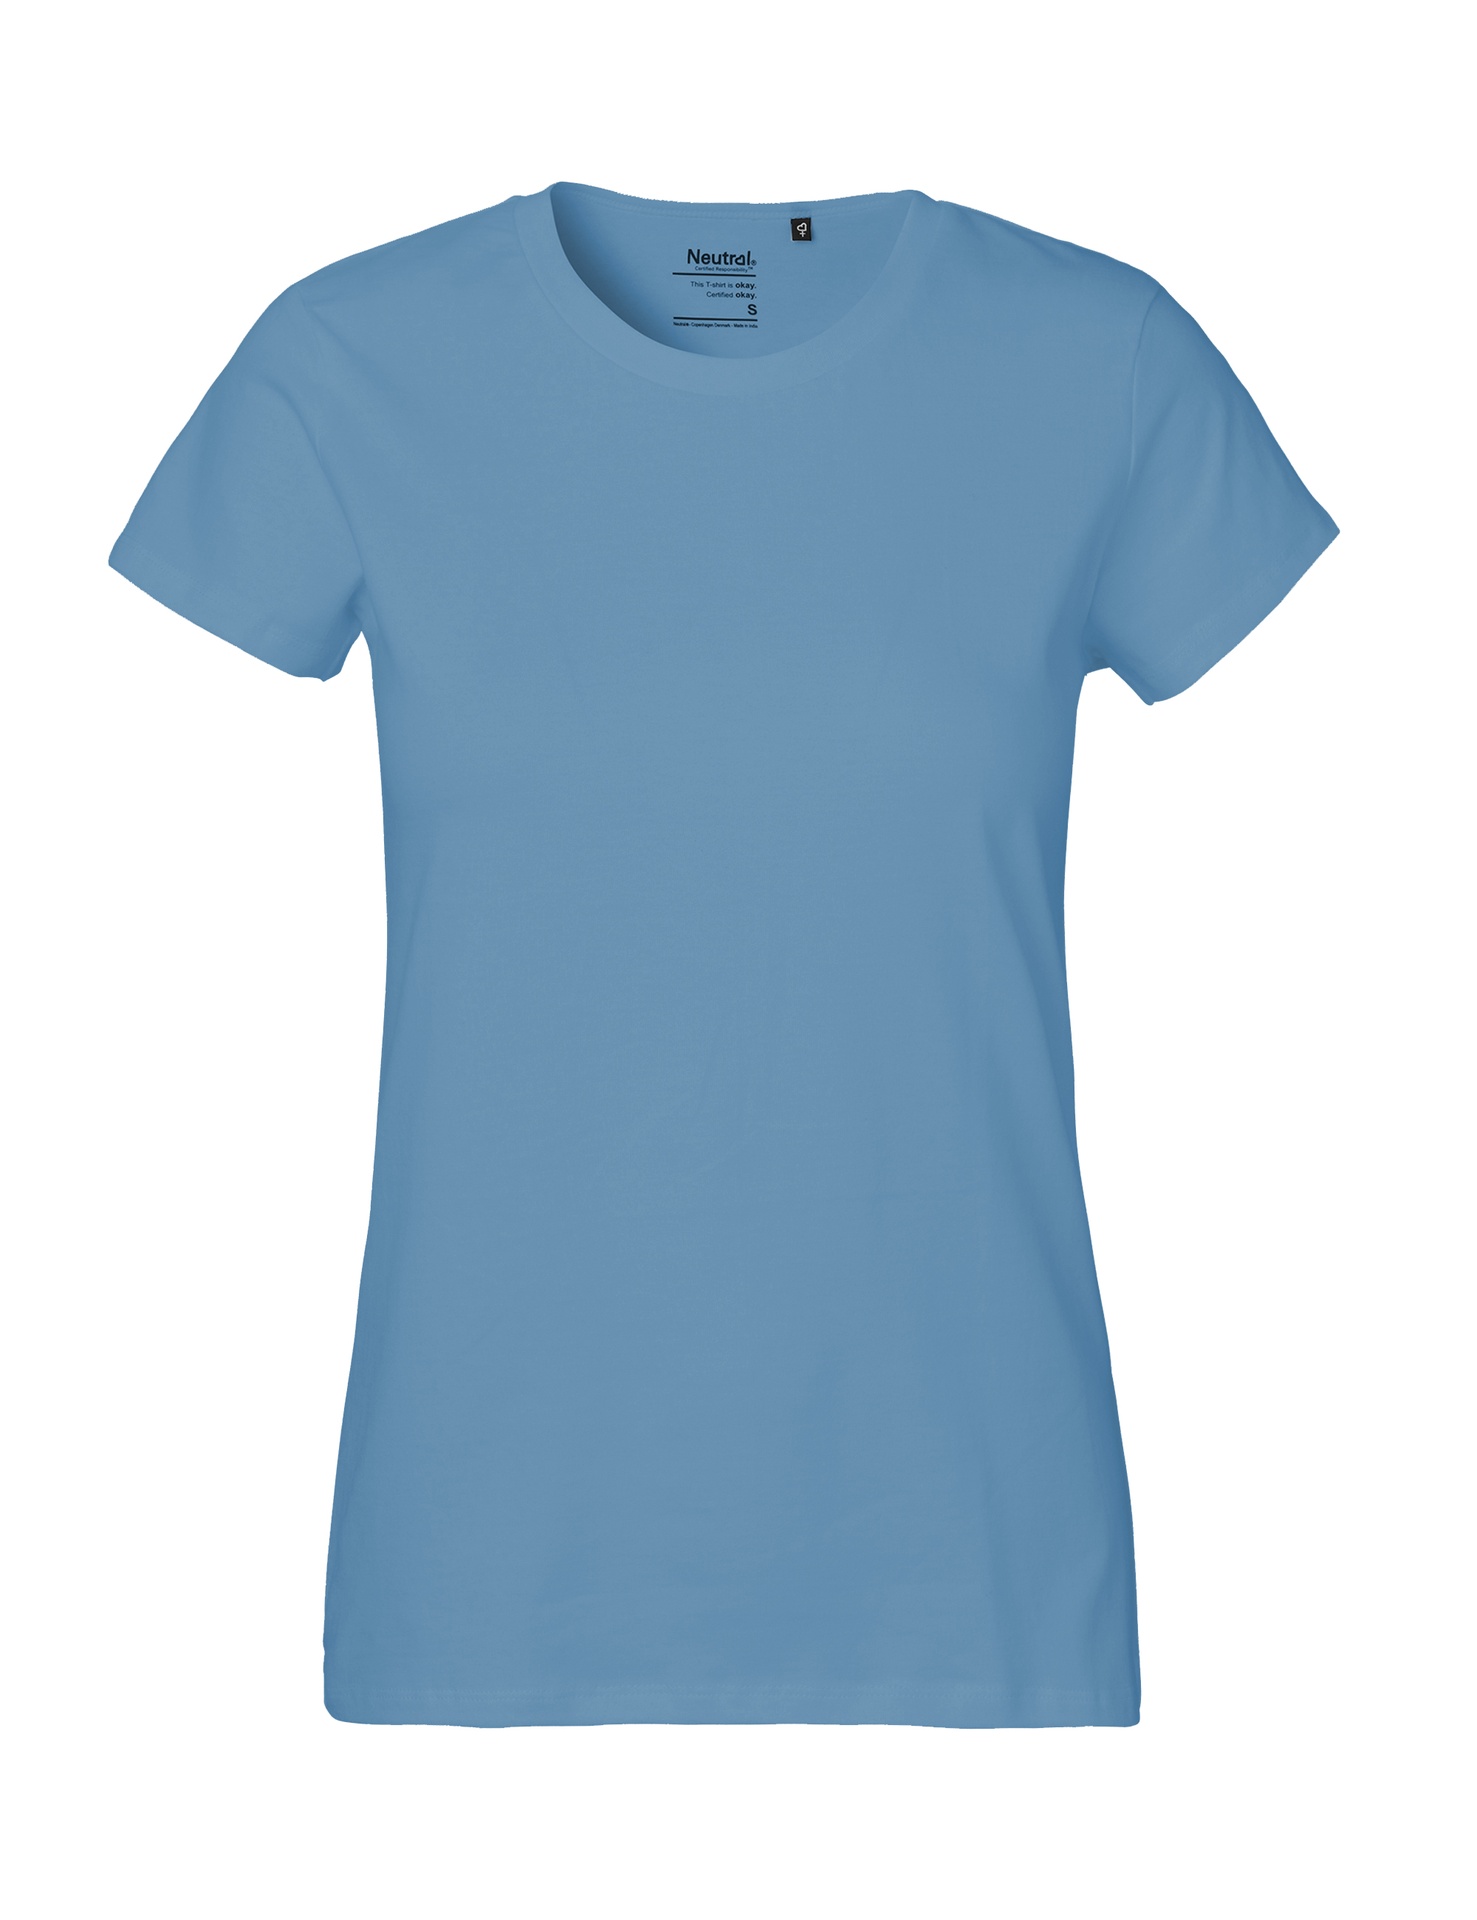 [PR/04113] Ladies Classic T-Shirt (Dusty Indigo 41, M)